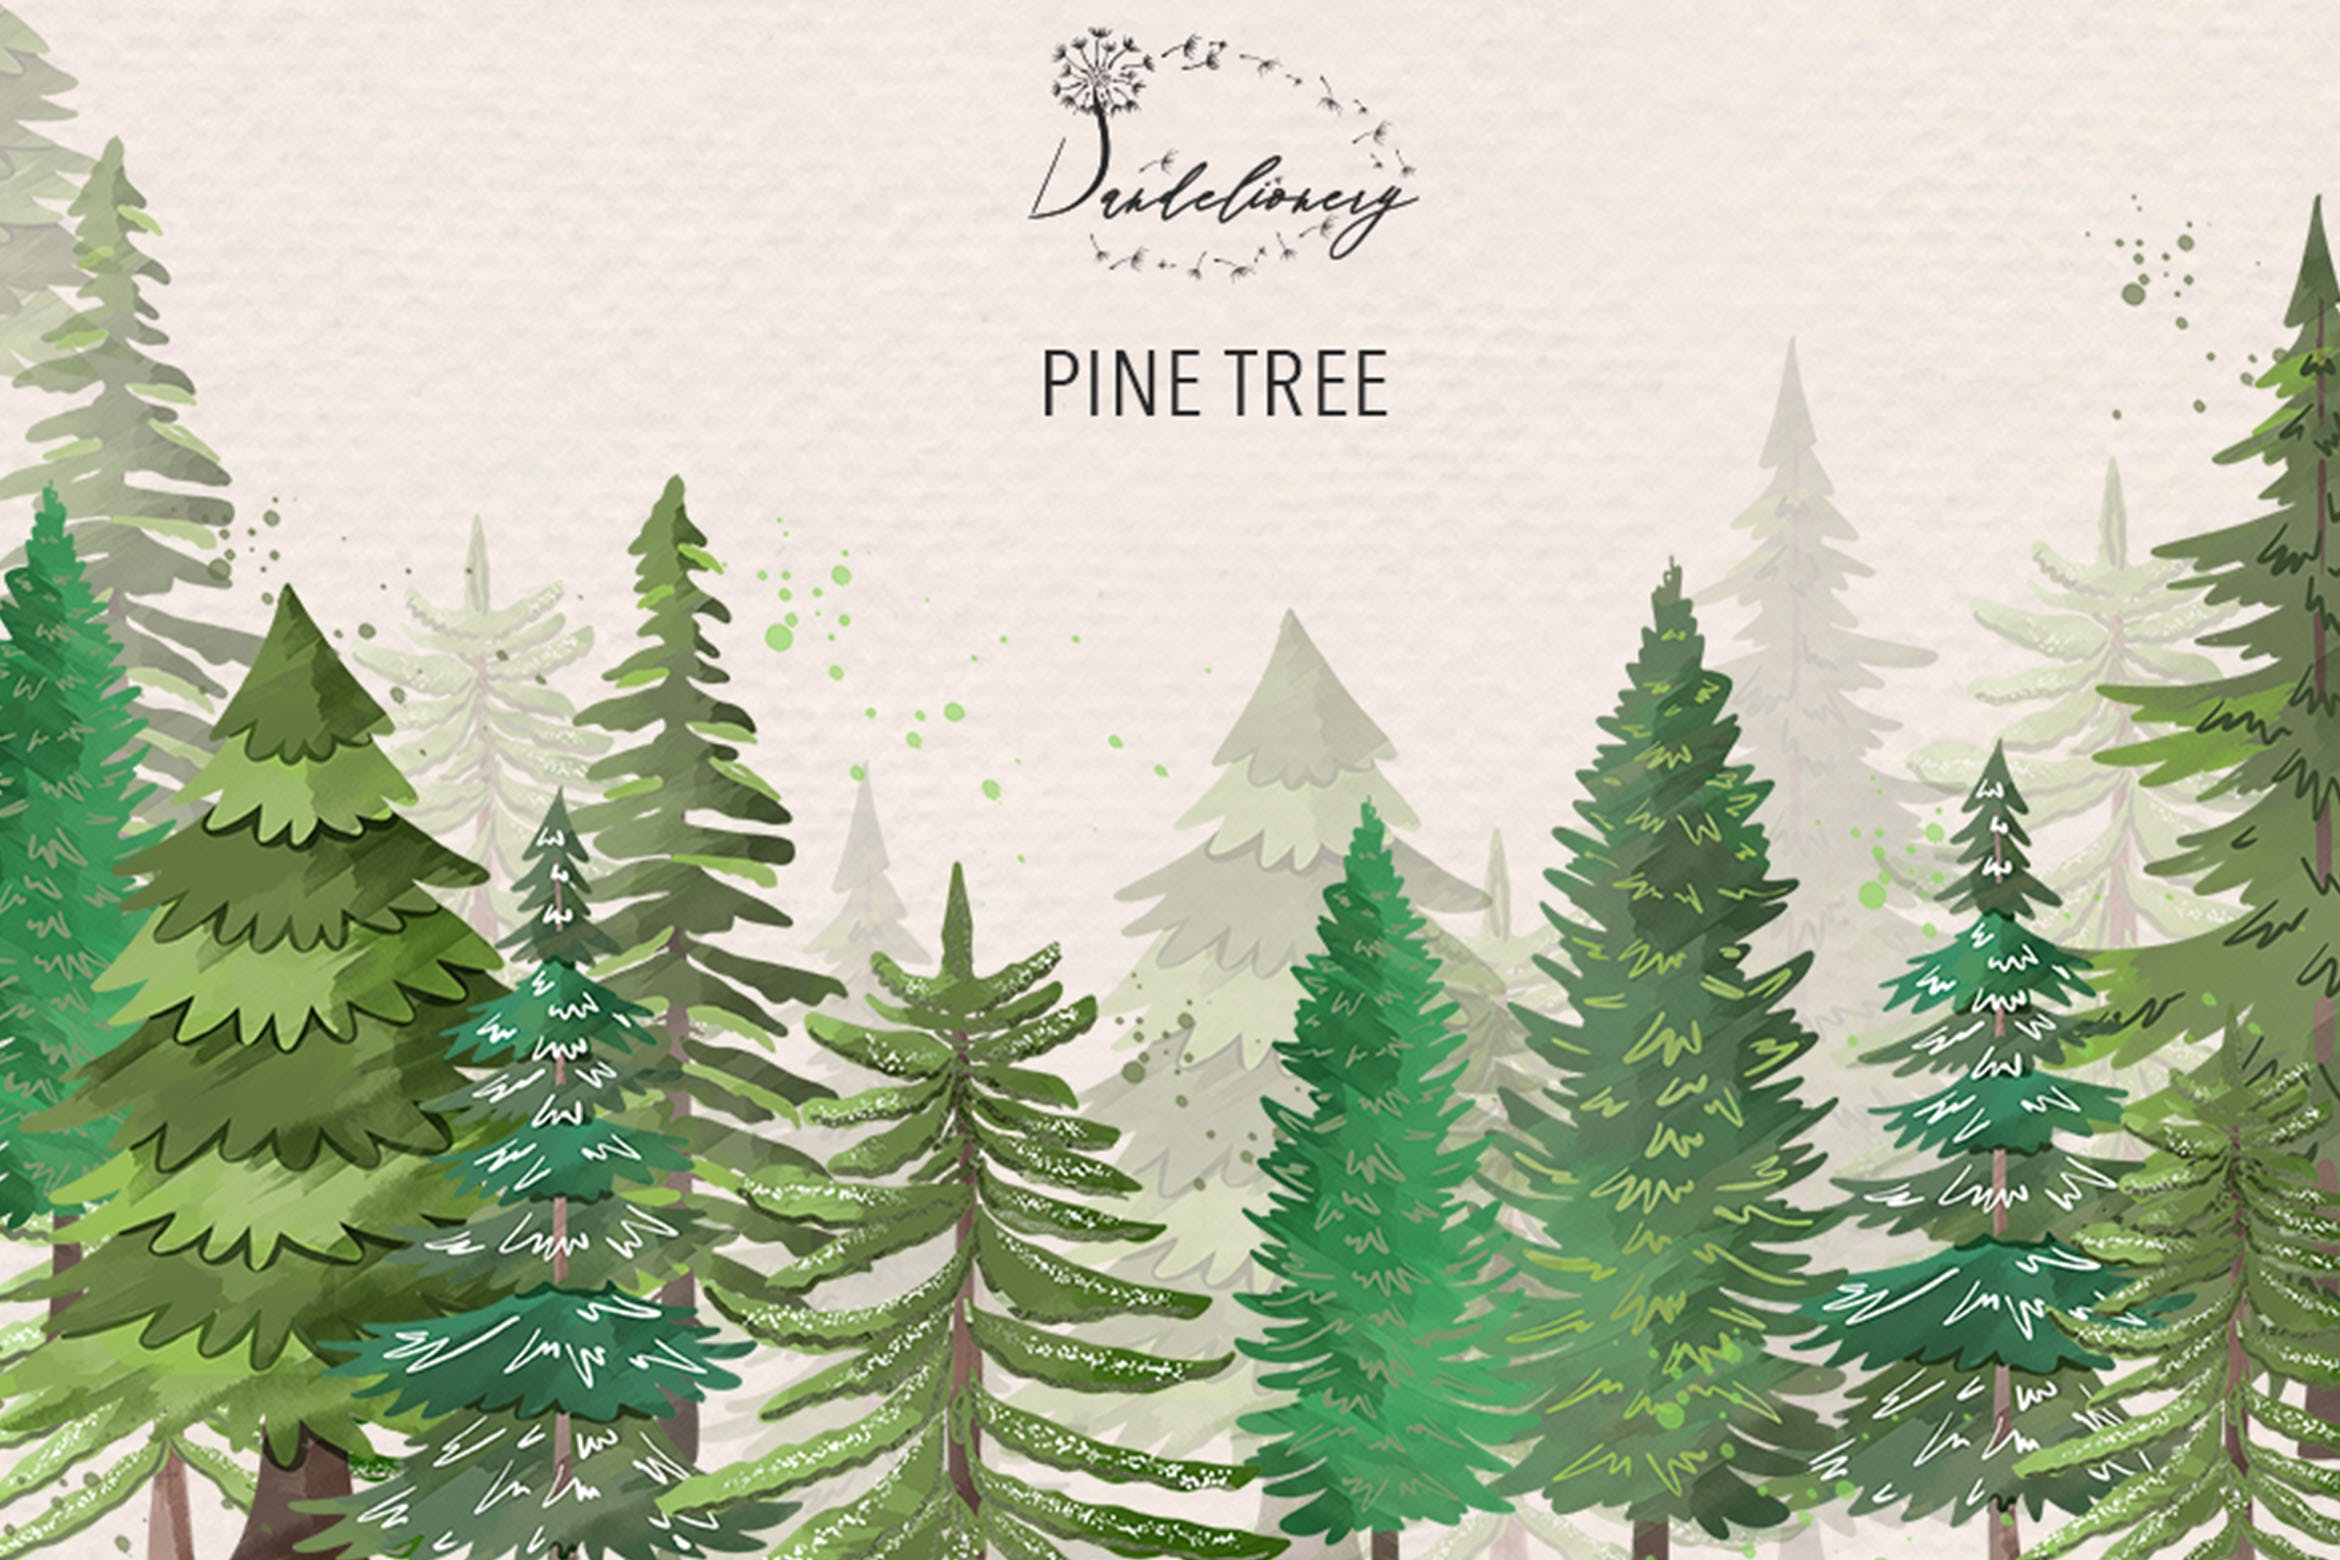 松树水彩艺术剪贴画第一素材精选PNG素材 Pine trees clip arts插图